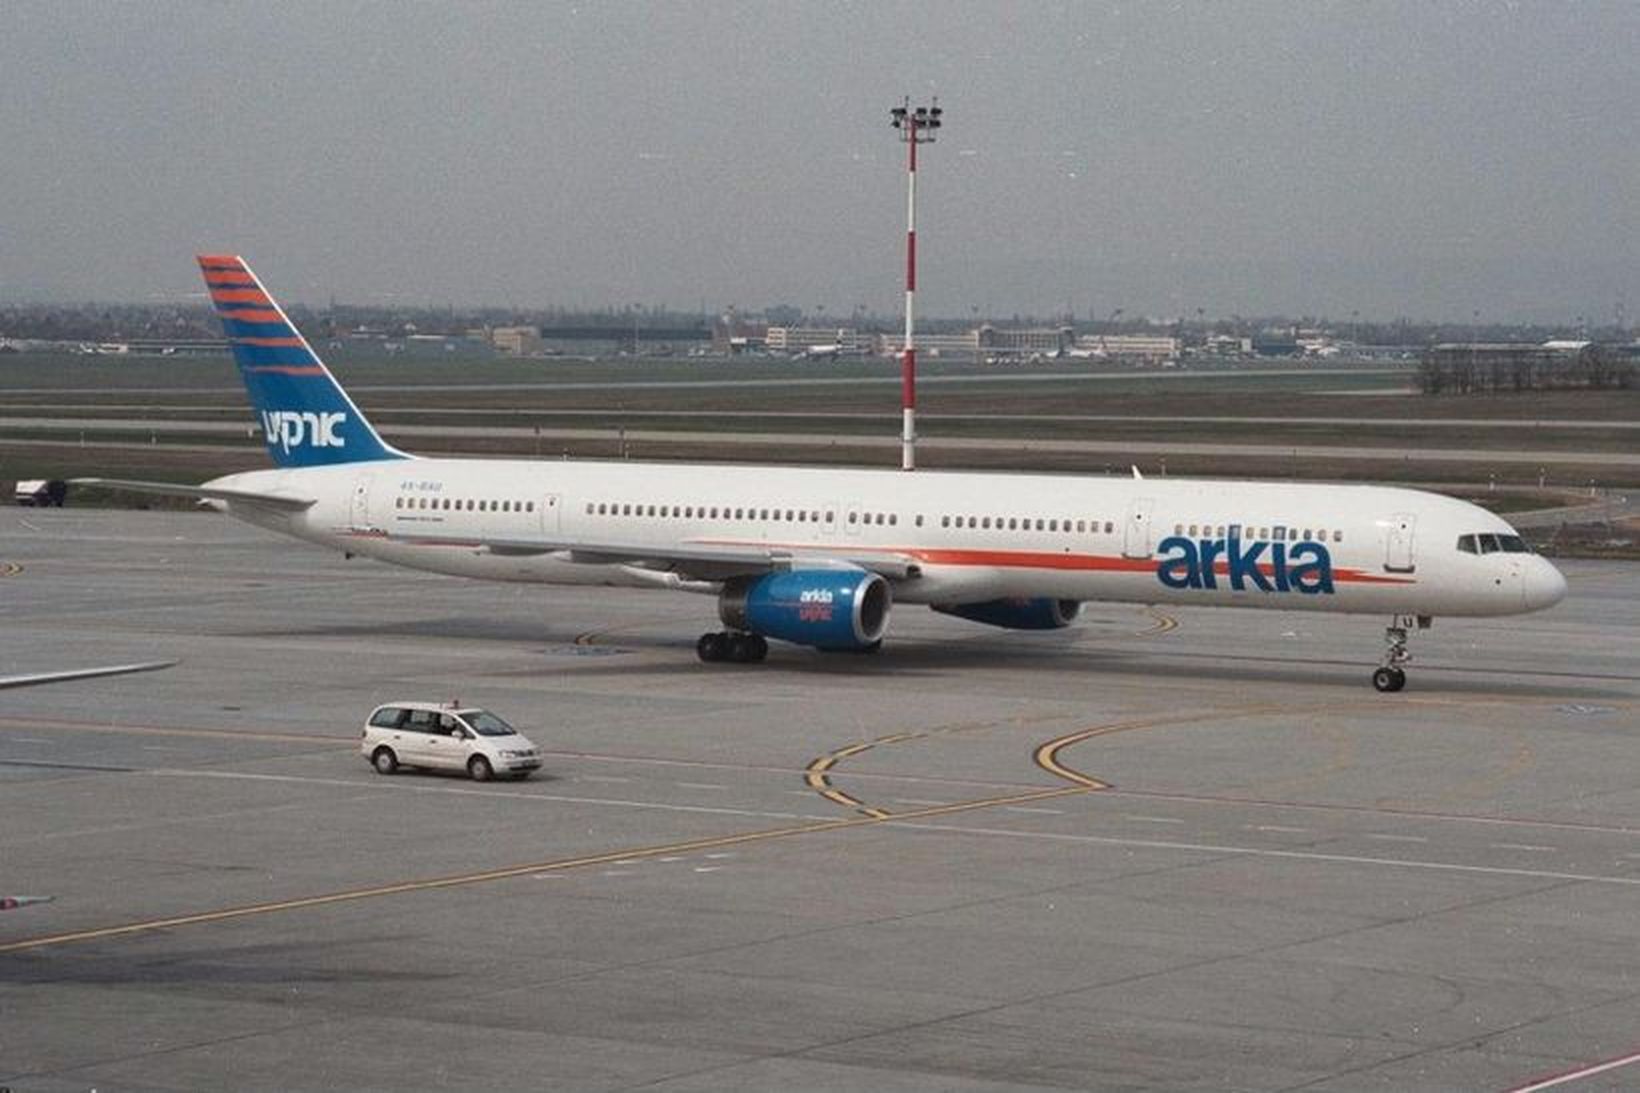 Boeing 757-3E7 merkt flugfélaginu Arkia.